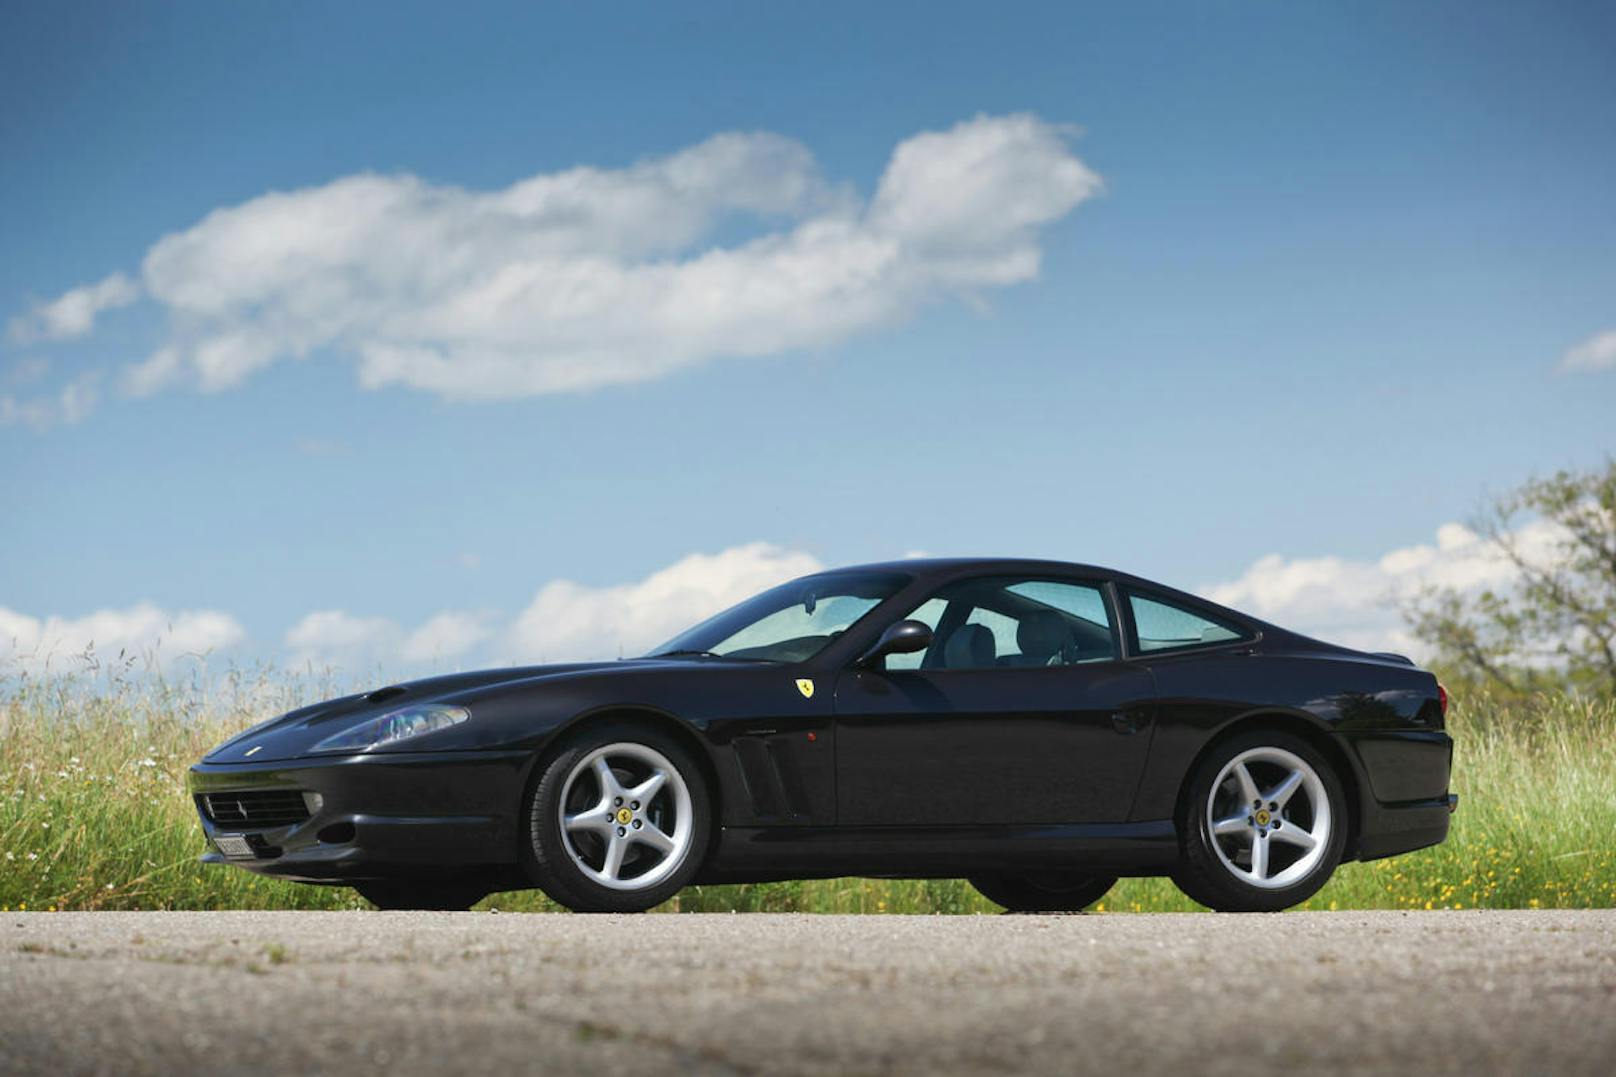 Mit 4,55 Metern Länge würde das Ferrari Coupé heute zu den kompakten Sportwagen gehören.